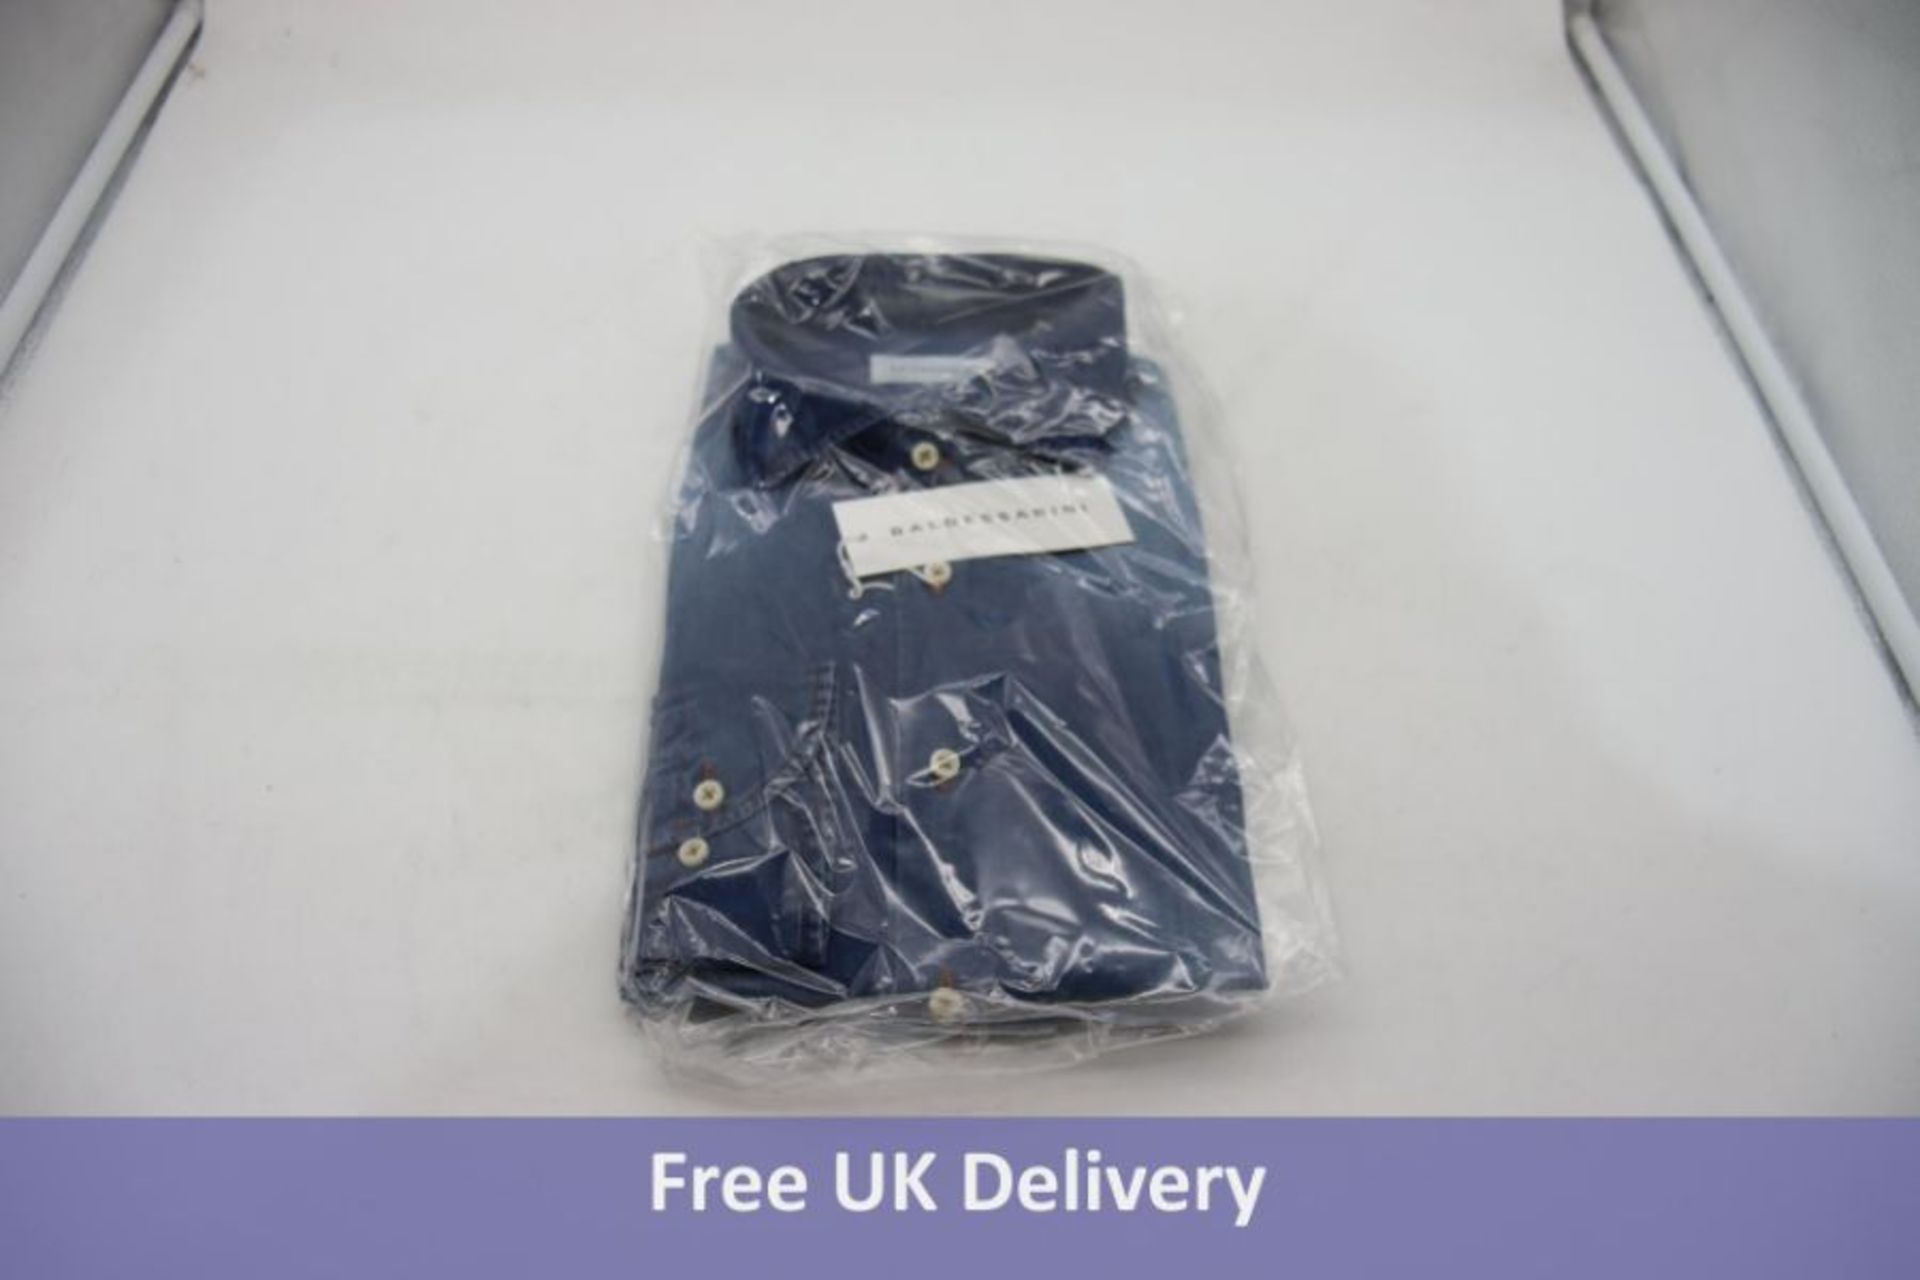 Two Baldessarini Men's Henry Shirts, Vintage Indigo, Size M - Image 2 of 2